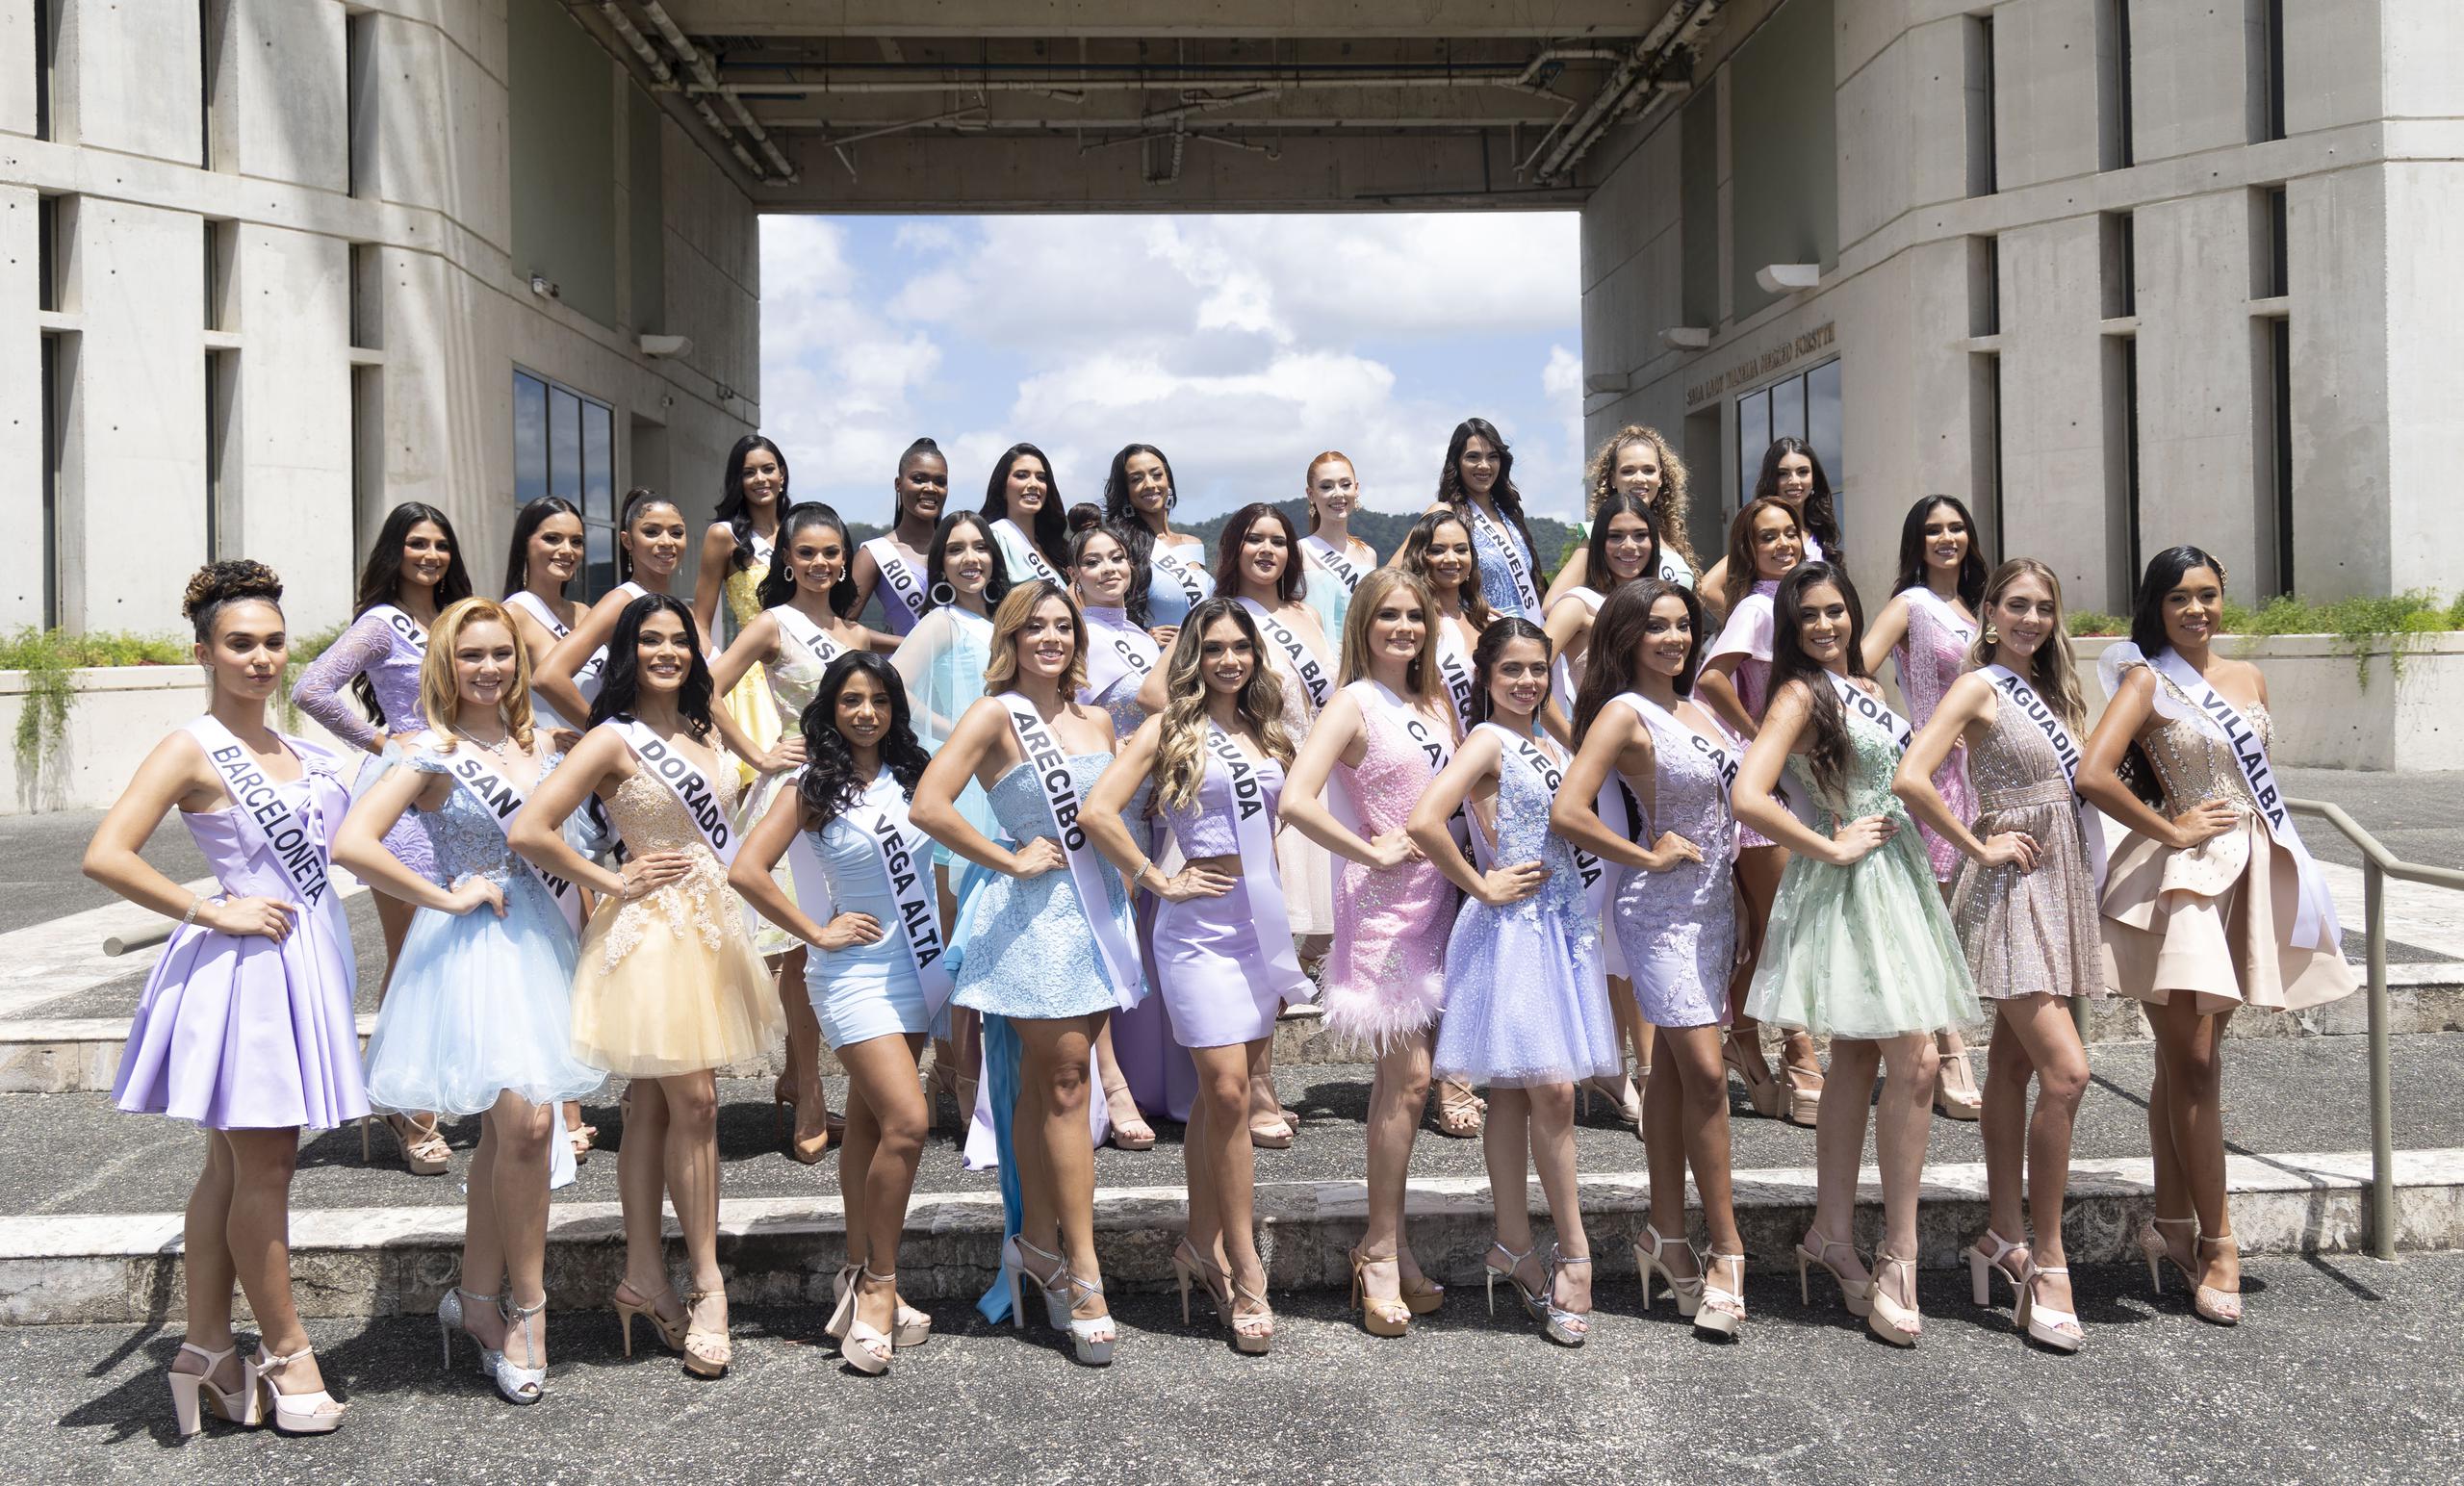 32 reinas de belleza aspiran a conseguir la corona de Miss Mundo Puerto Rico, que se entregará en enero de 2024 desde el pueblo de Humacao.